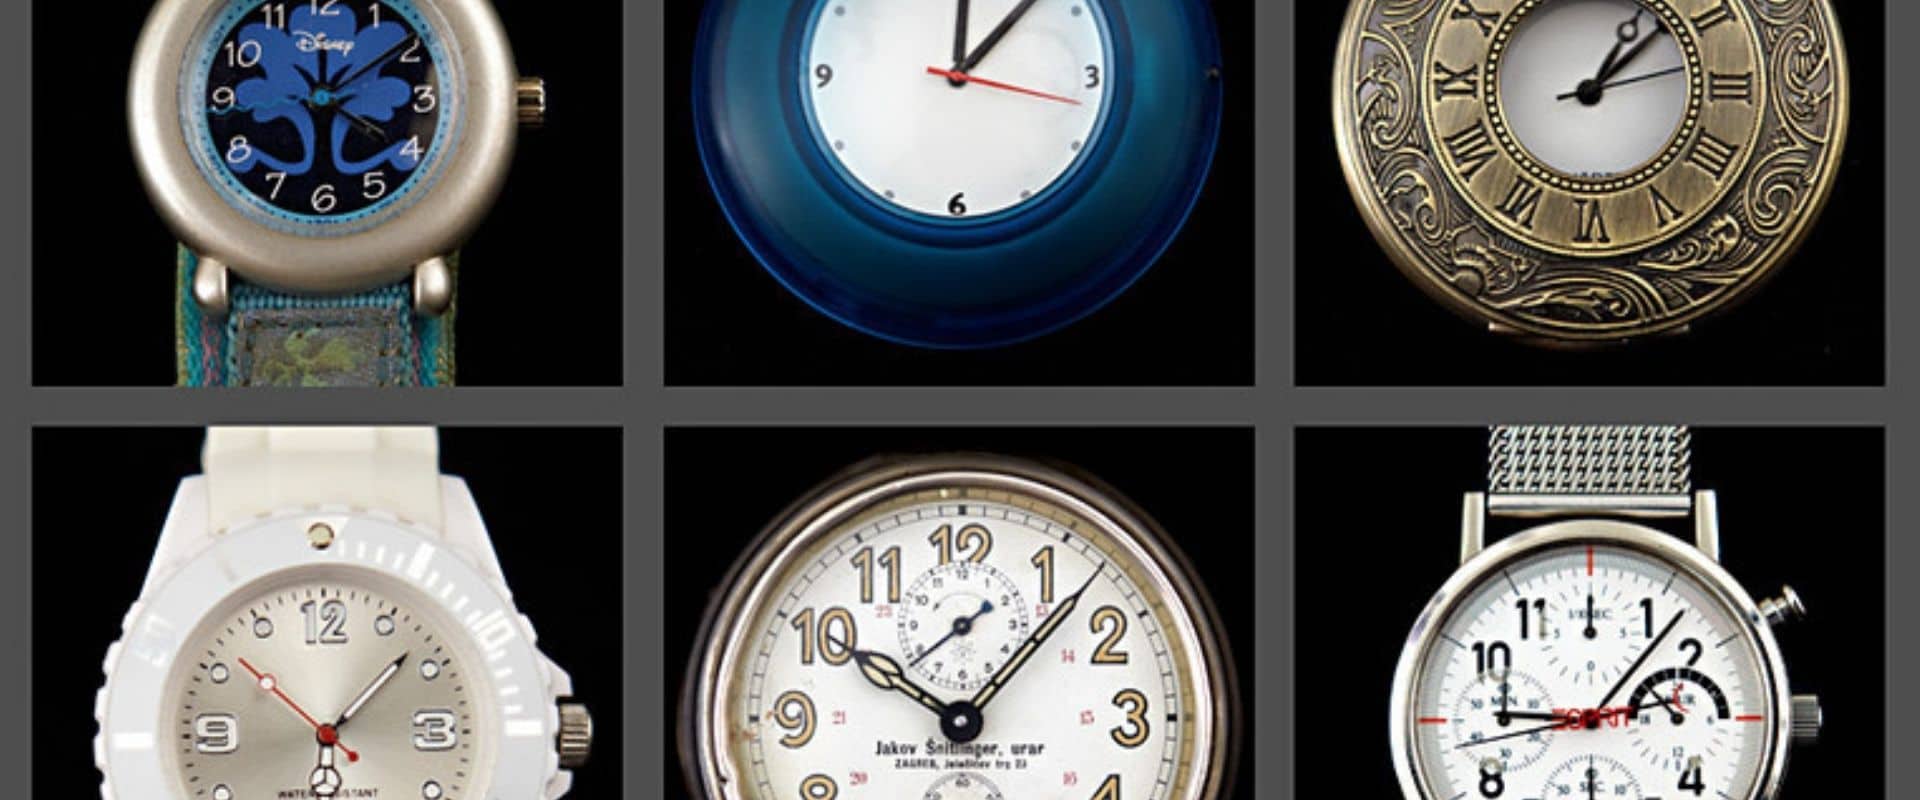 9 montres à cadrans analogiques variés